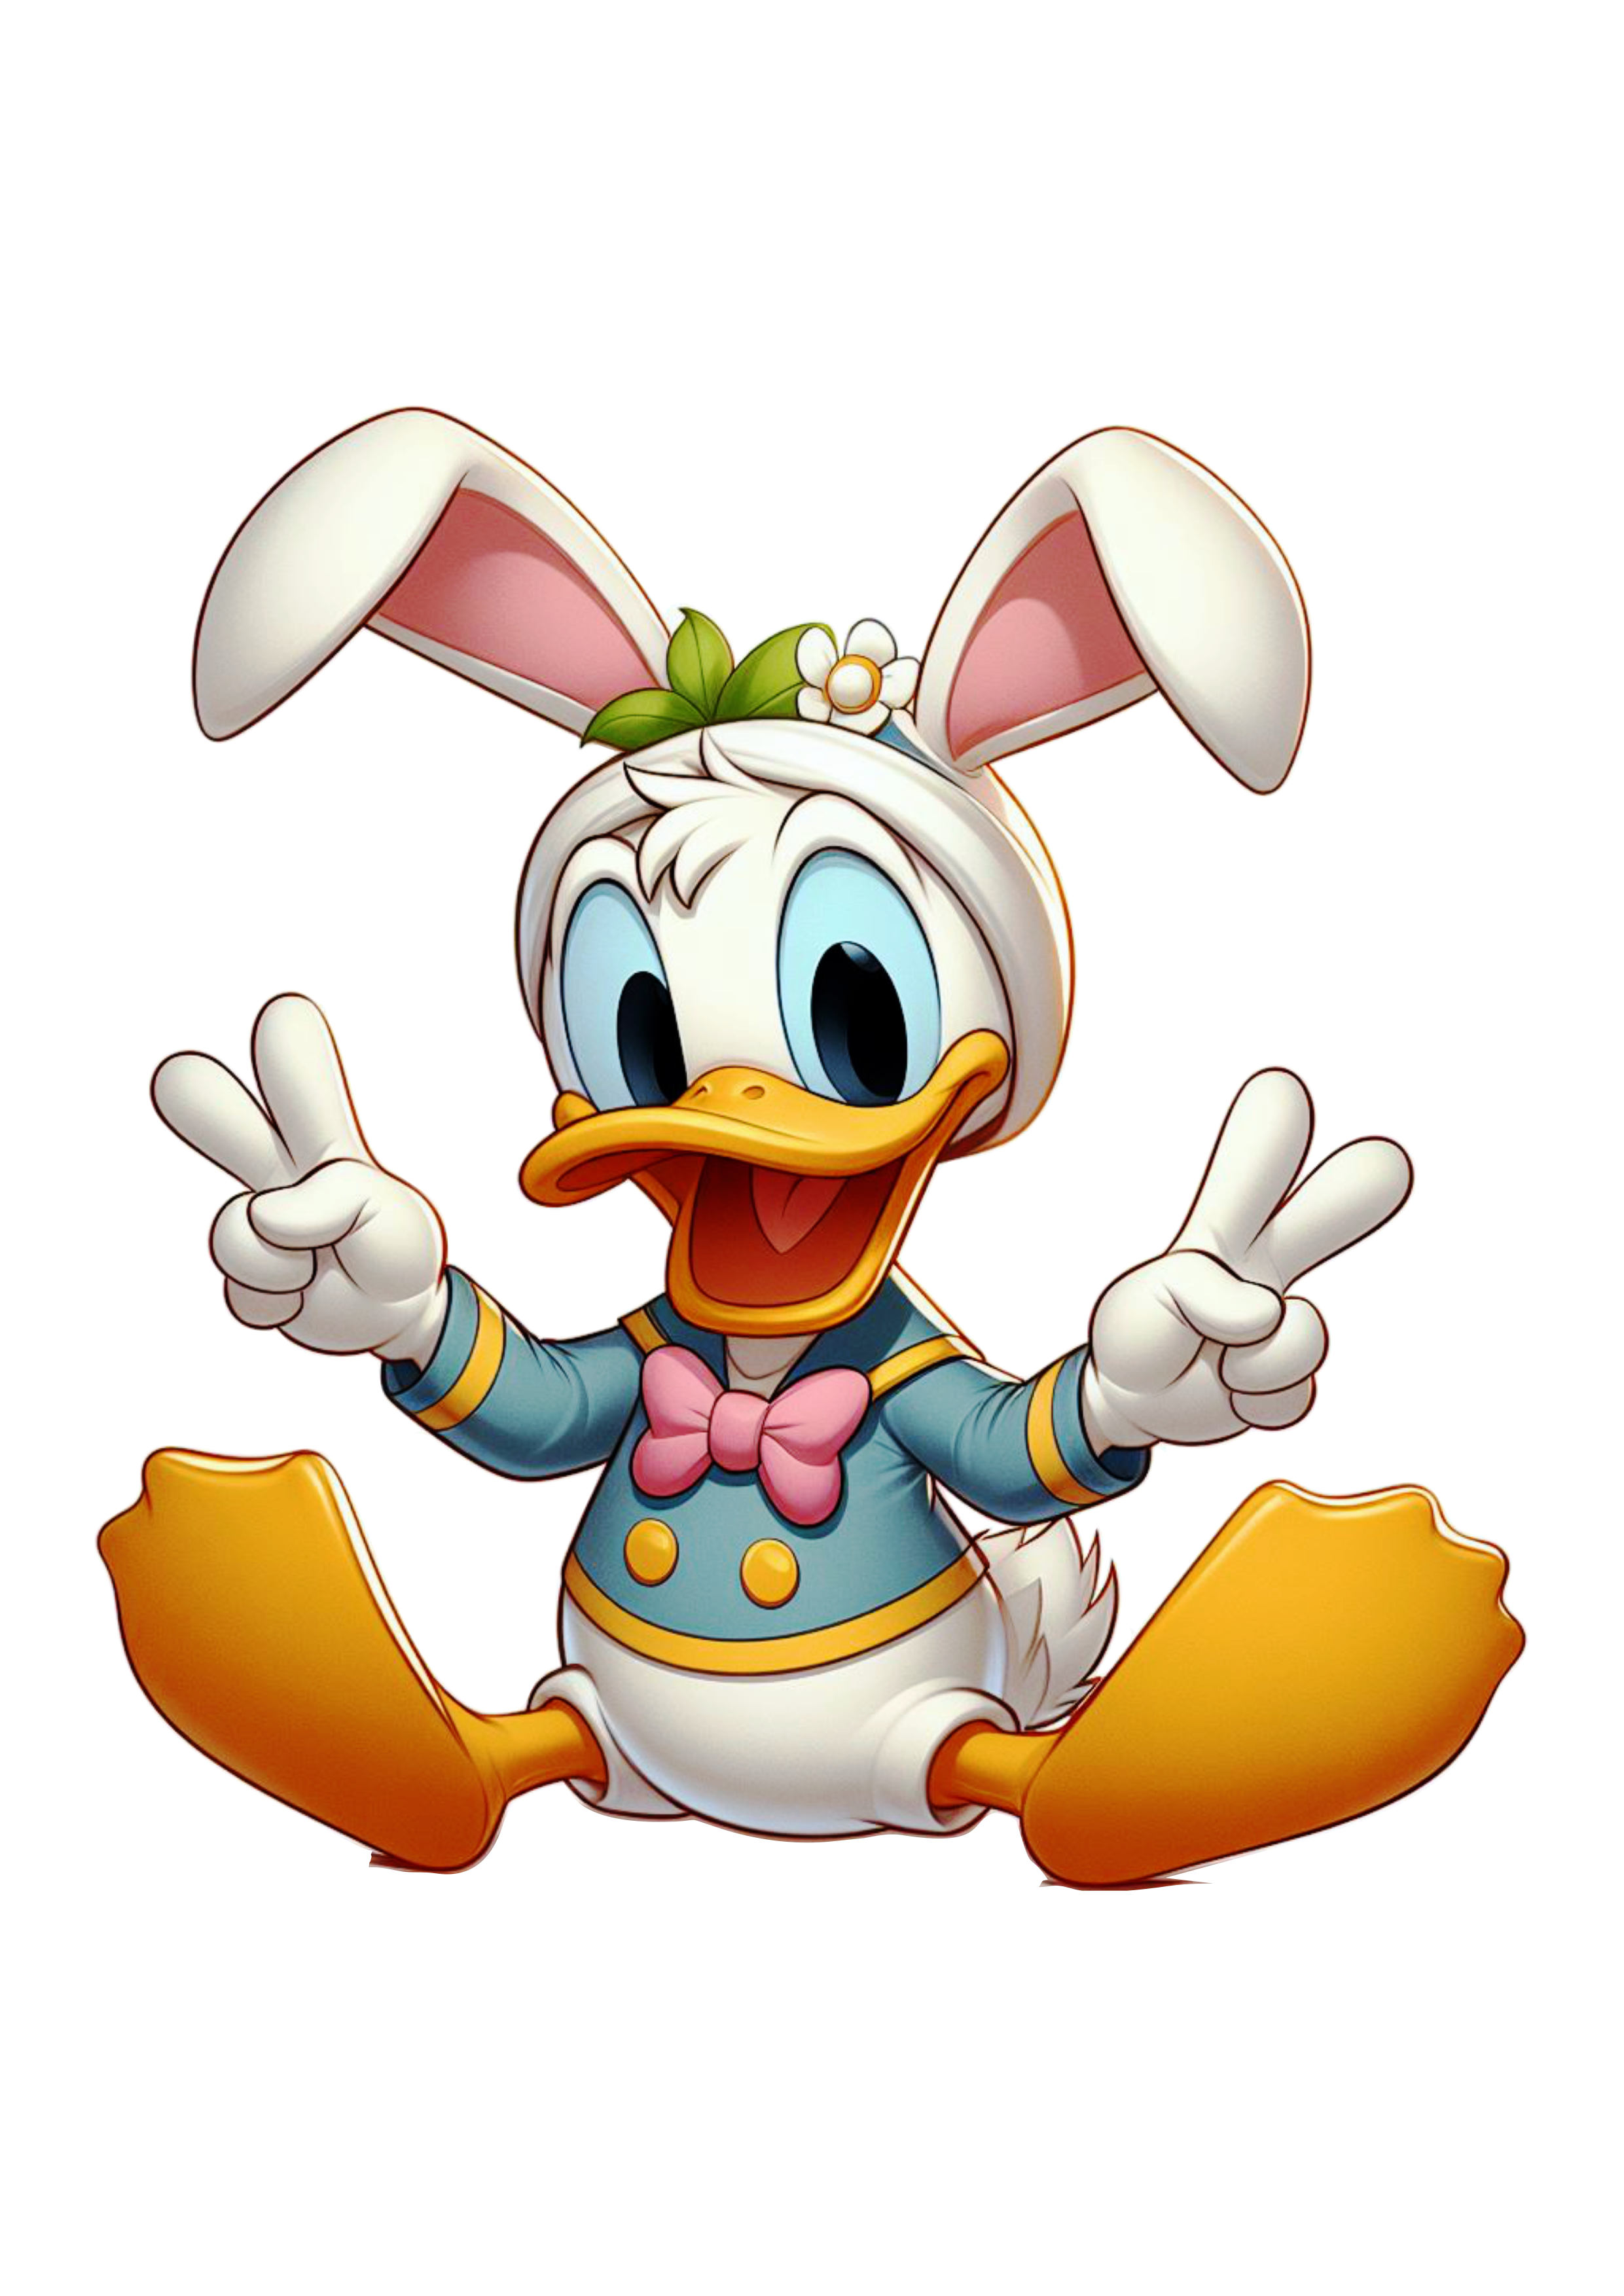 Pato Donald fantasiado de coelhinho da páscoa clipart vetor artes visuais Disney png image infantil pack